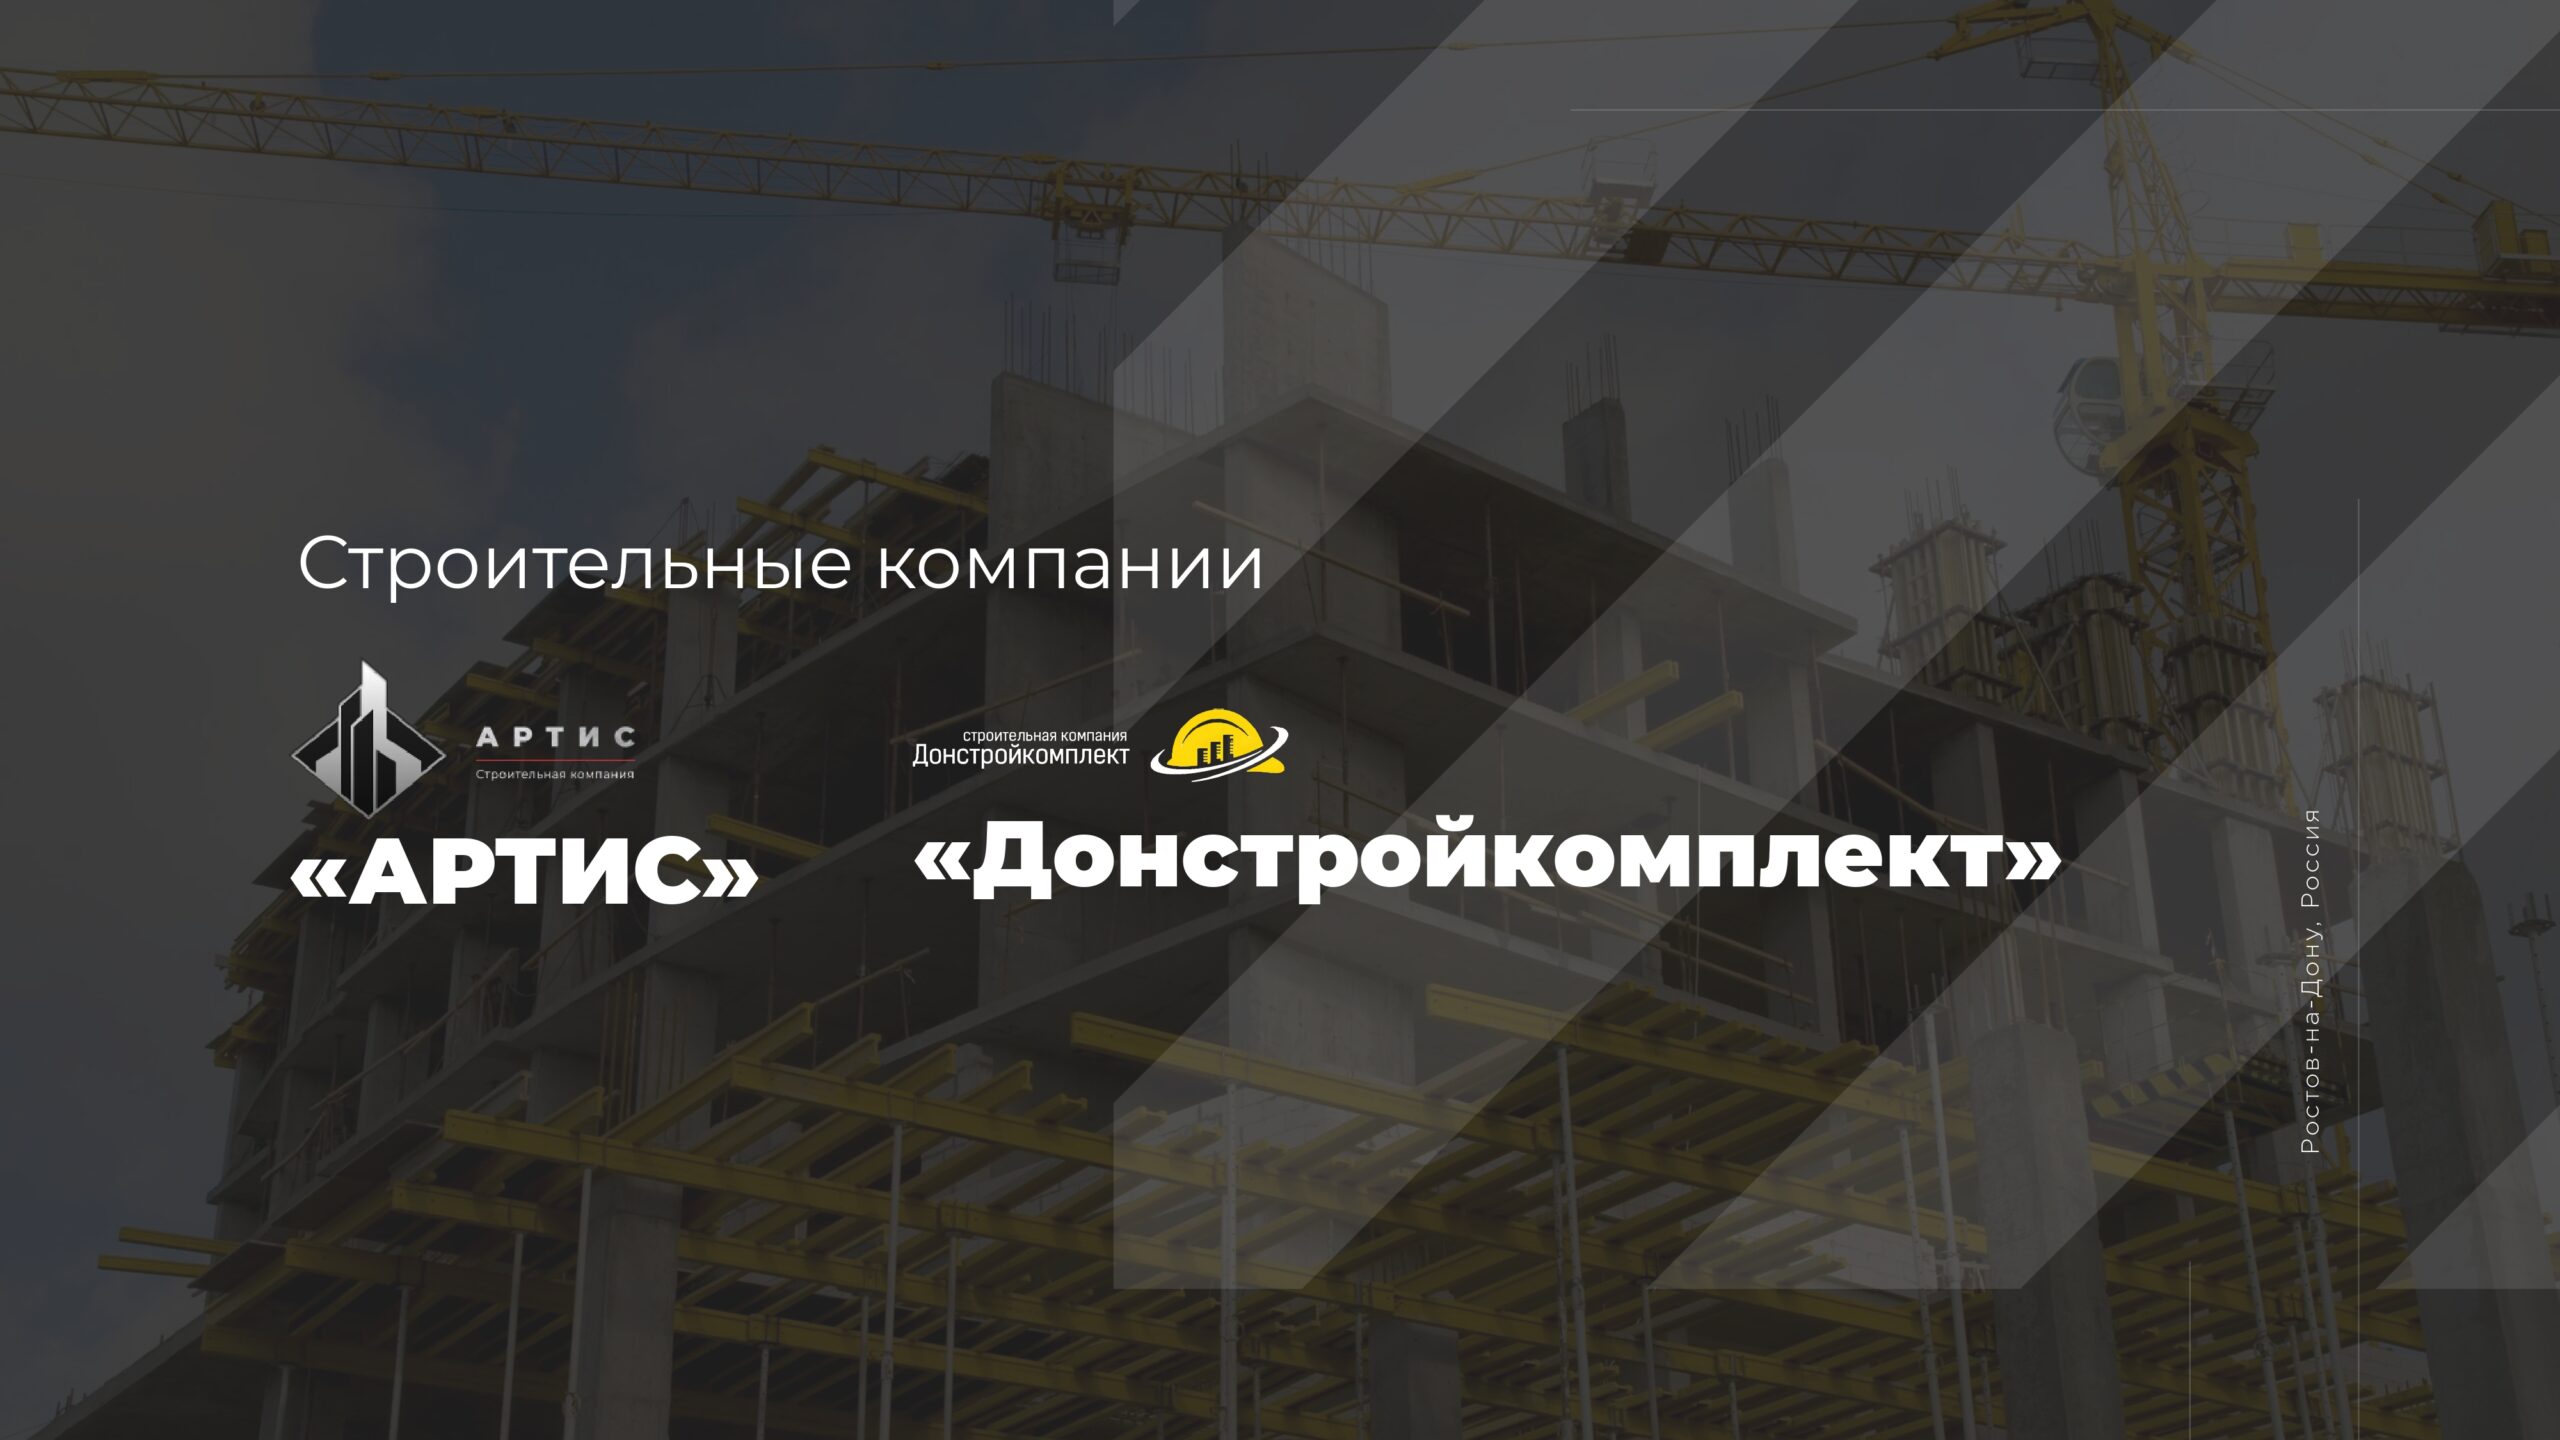 Презентация строительной компании — реконструкция, капитальный ремонт зданий слайд 1